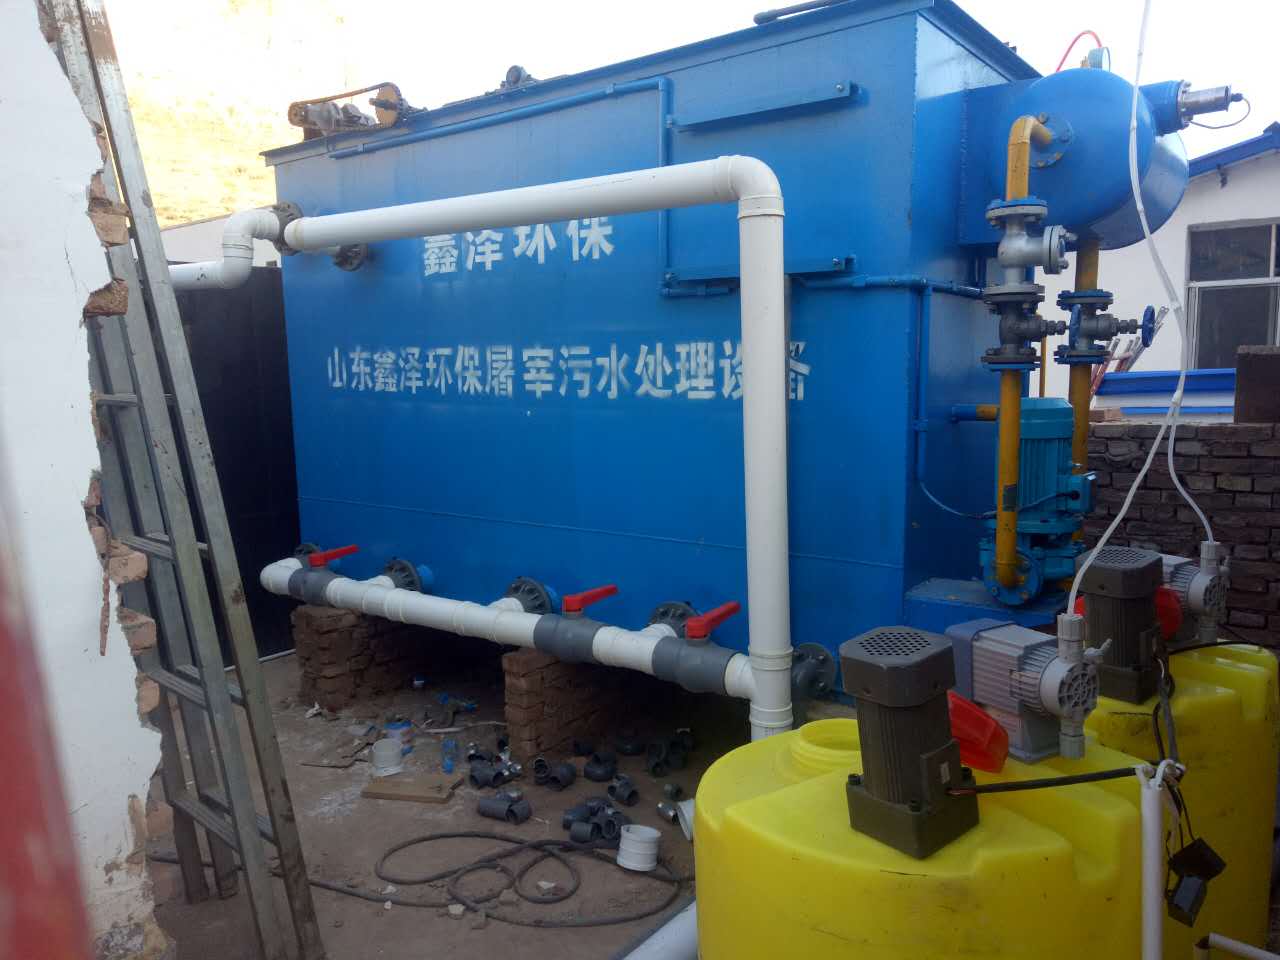 厦门市洗涤公司污水处理设备一体化生产厂家